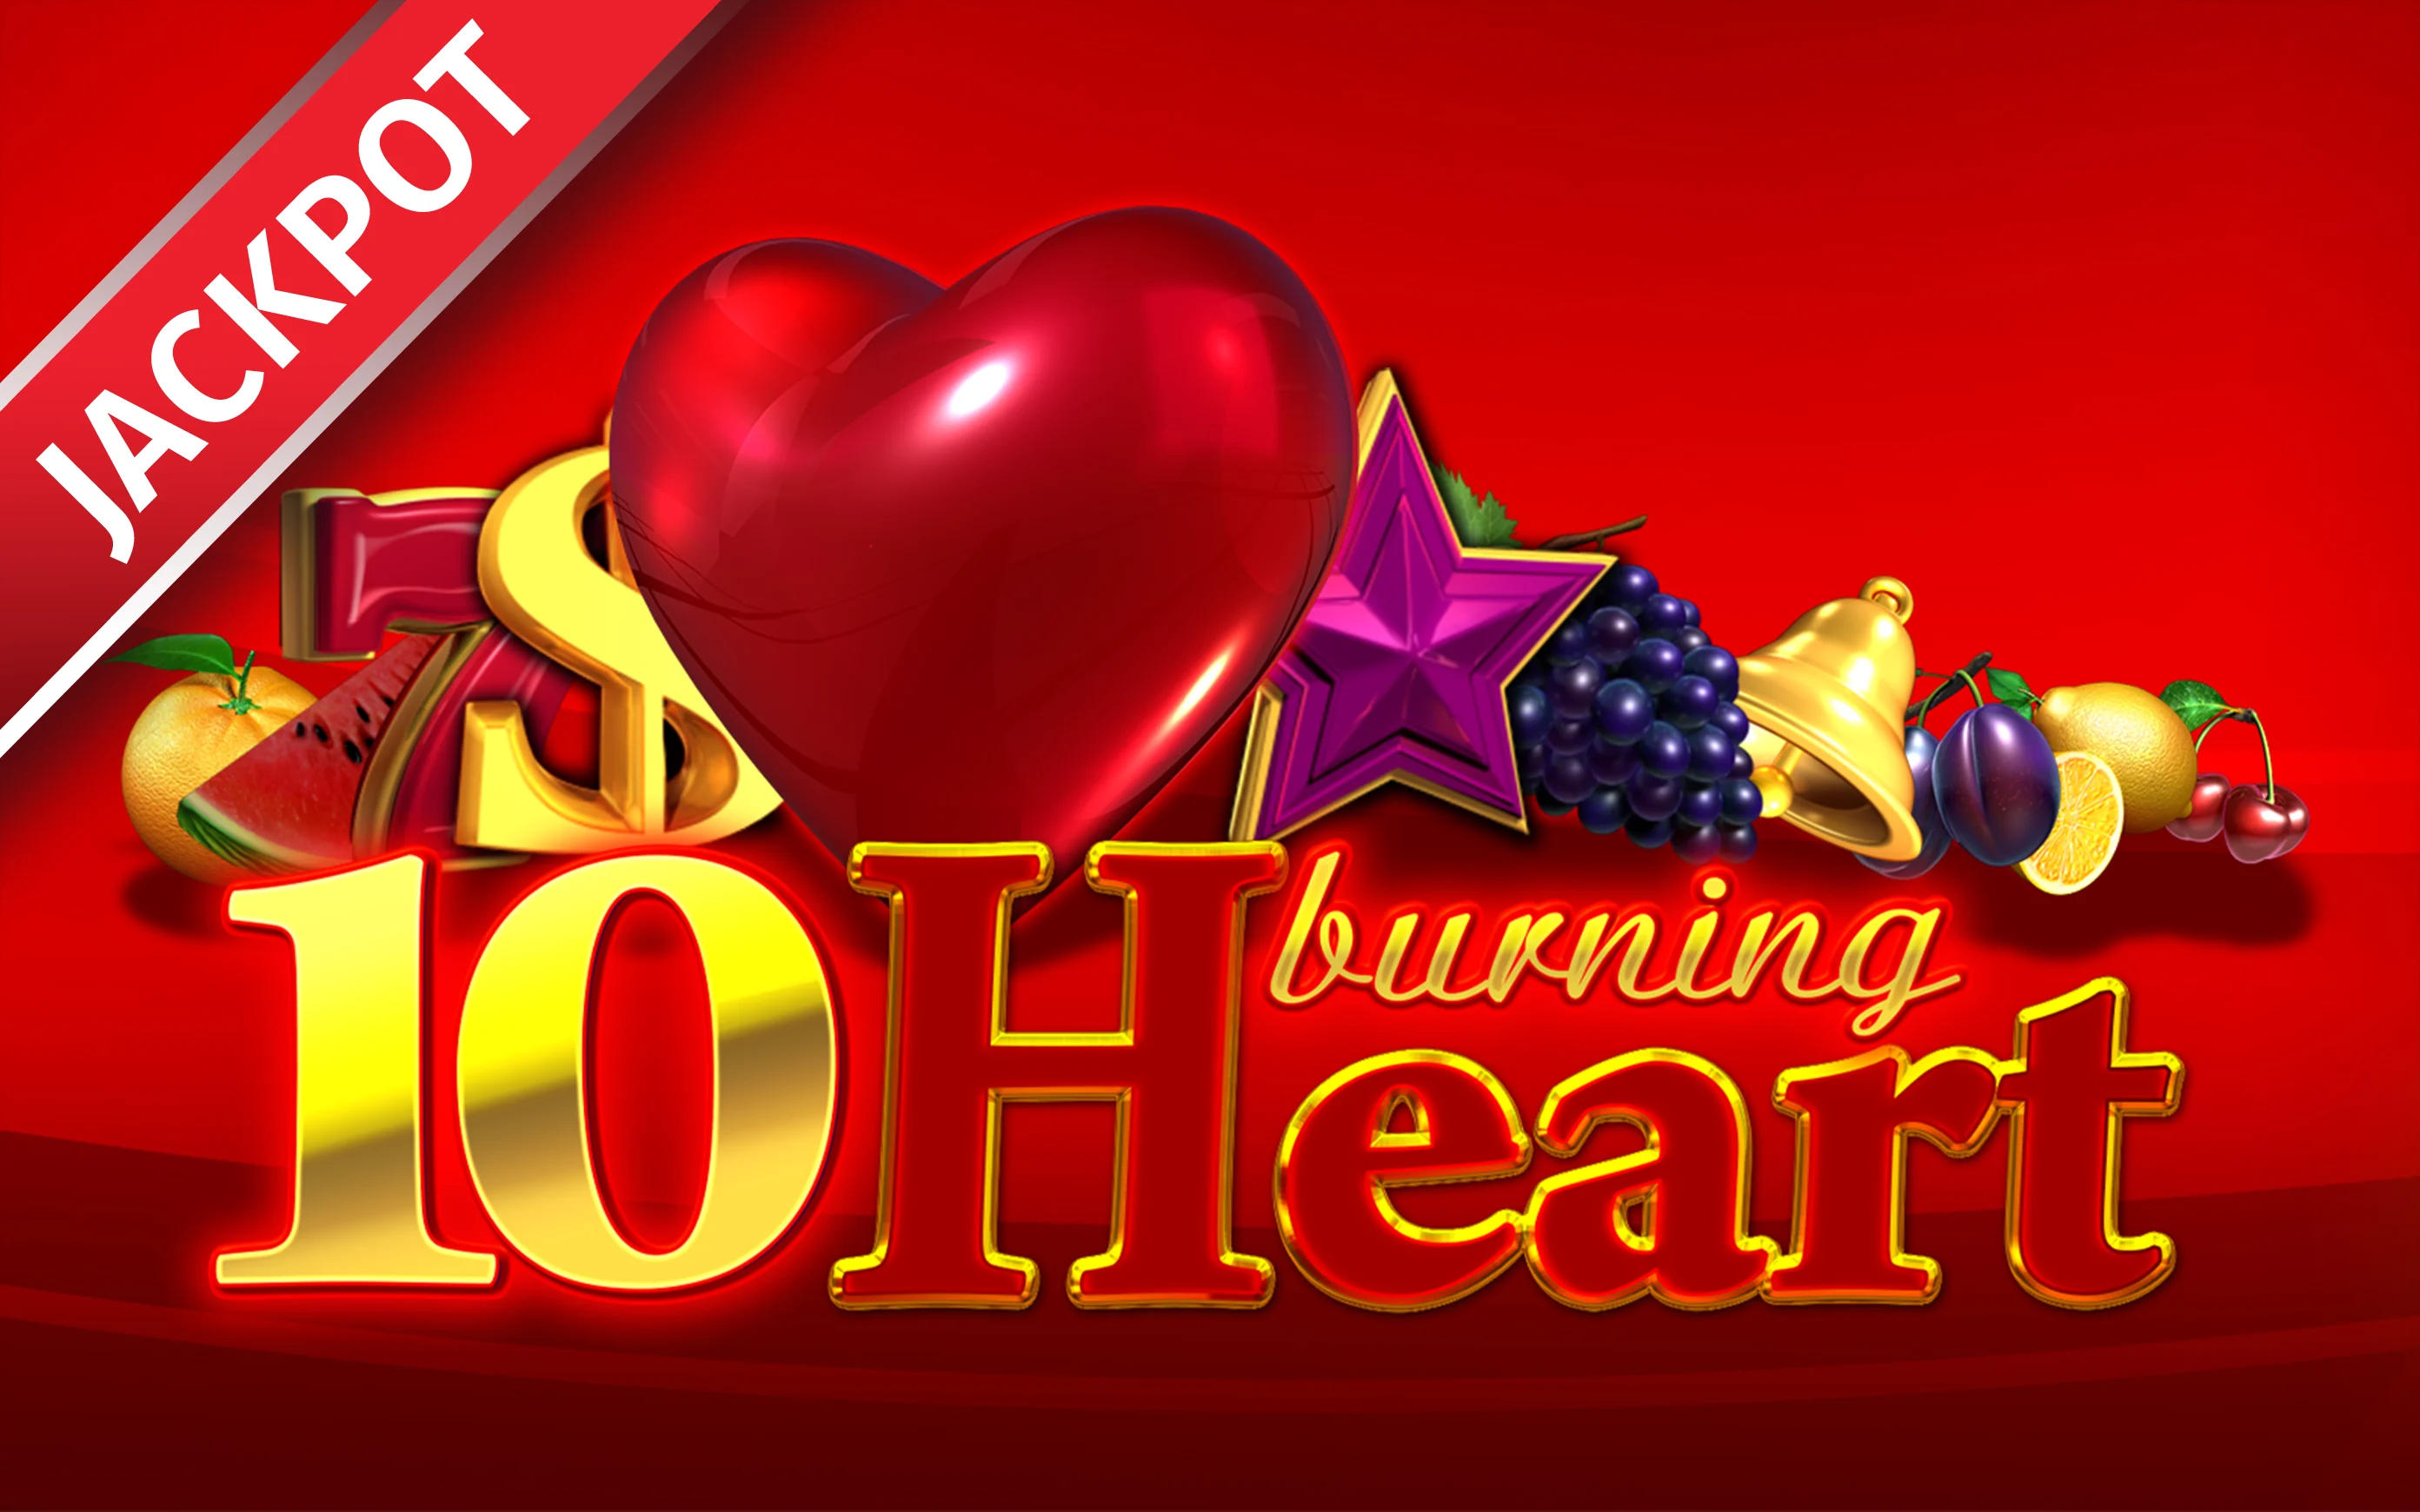 Joacă 10 Burning heart în cazinoul online Starcasino.be